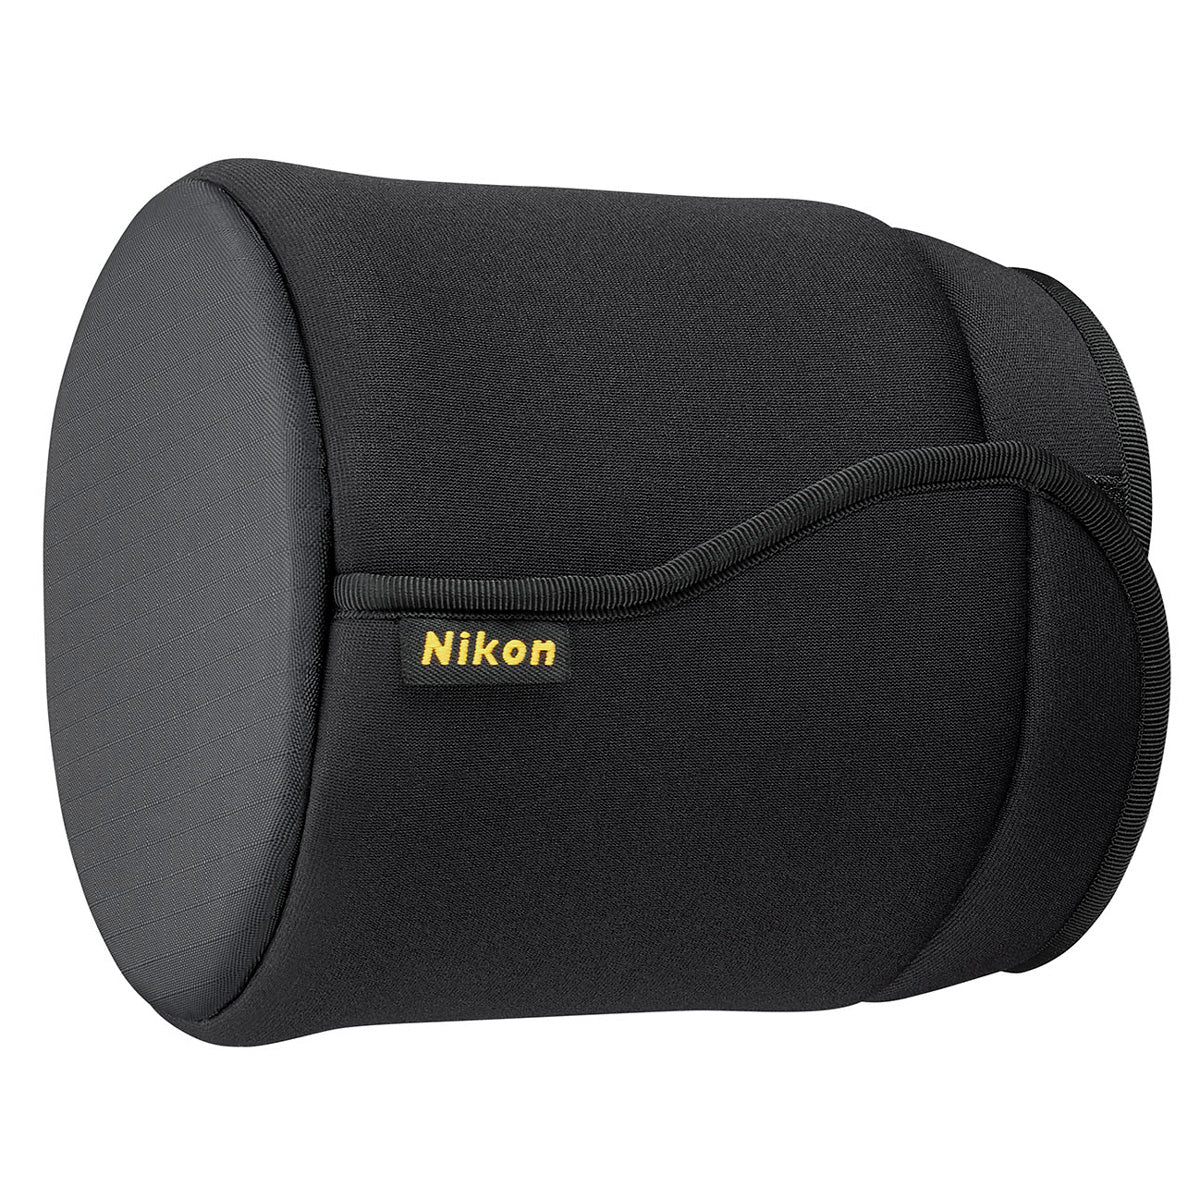 Nikon 180-400mm f4E TC1.4 FL ED VR Zoom-Nikkor Lens